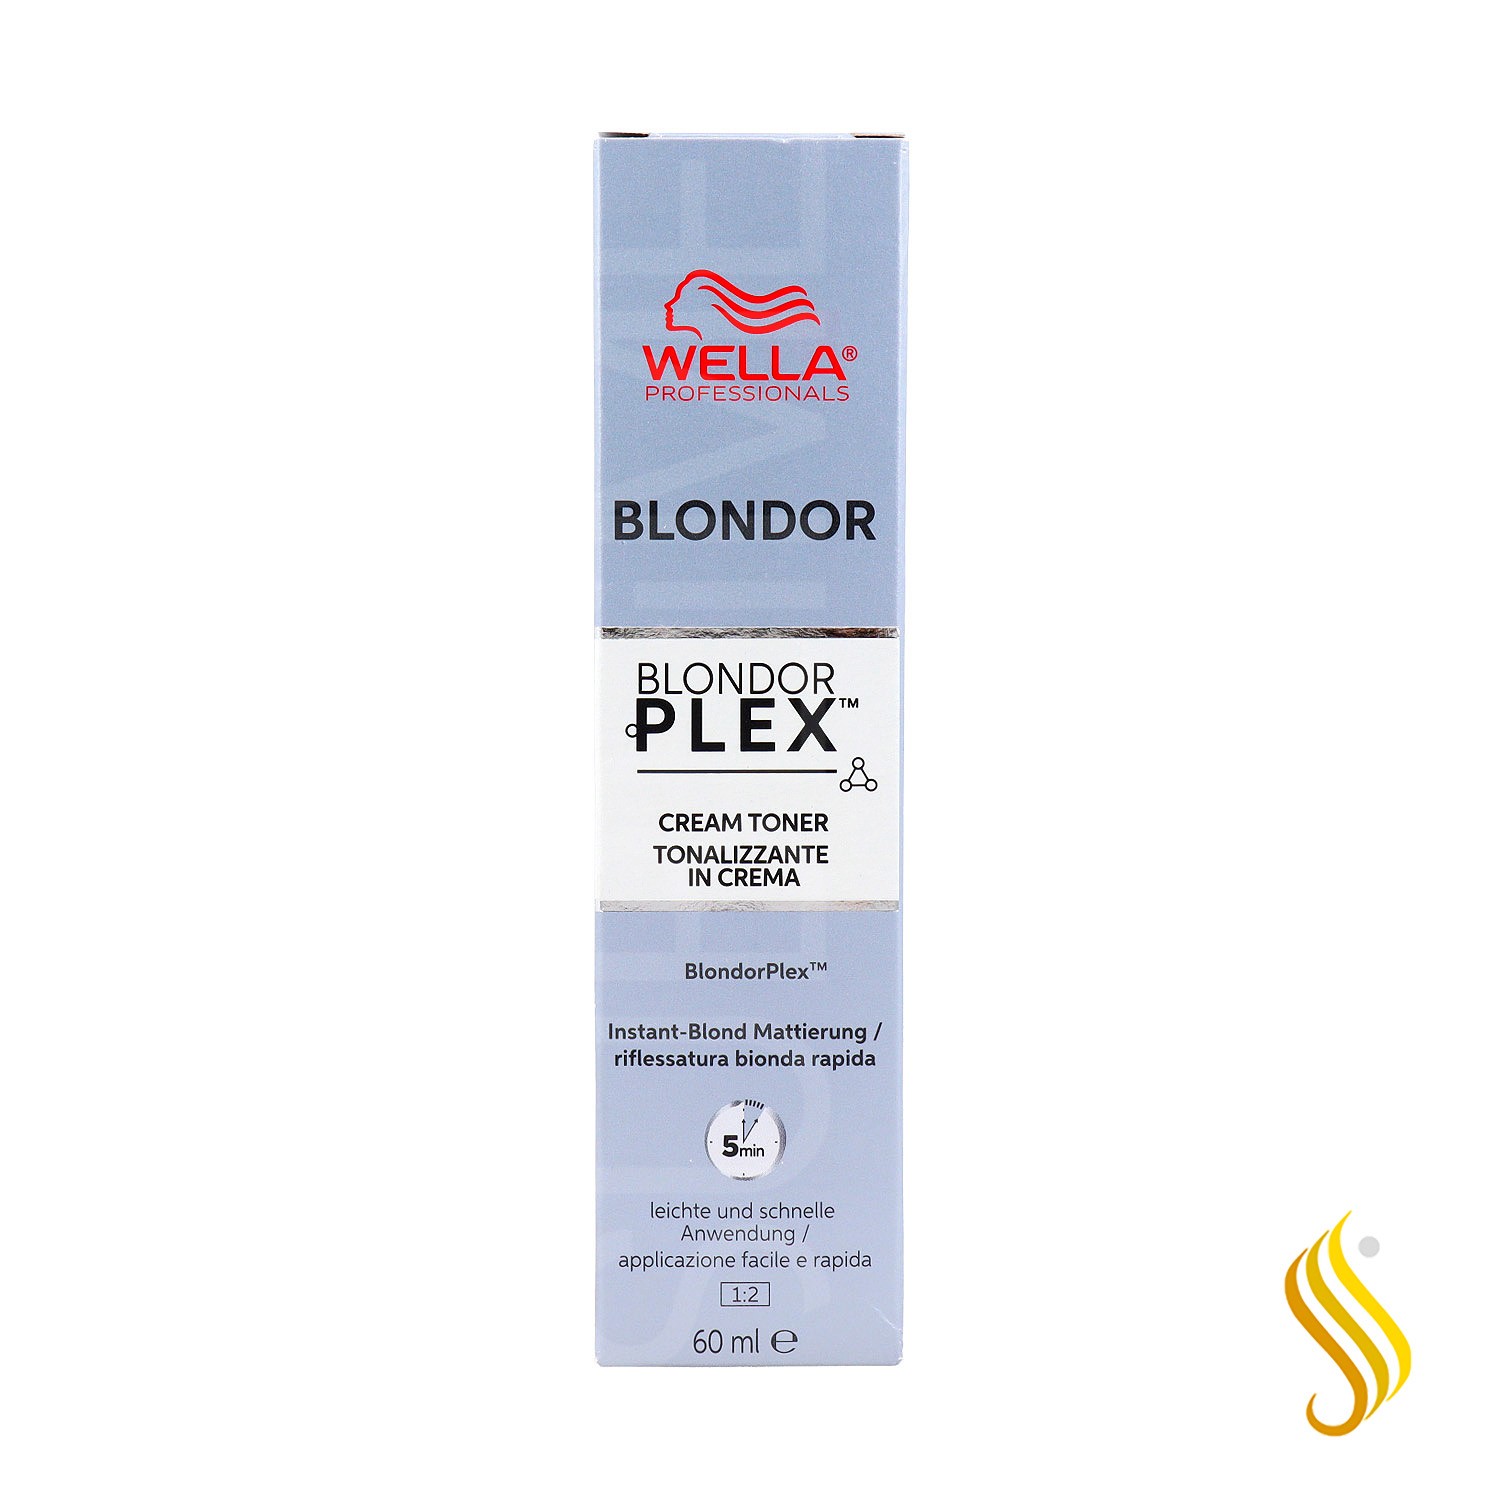 Wella Blondor Plex Cream Toner /96 60ml